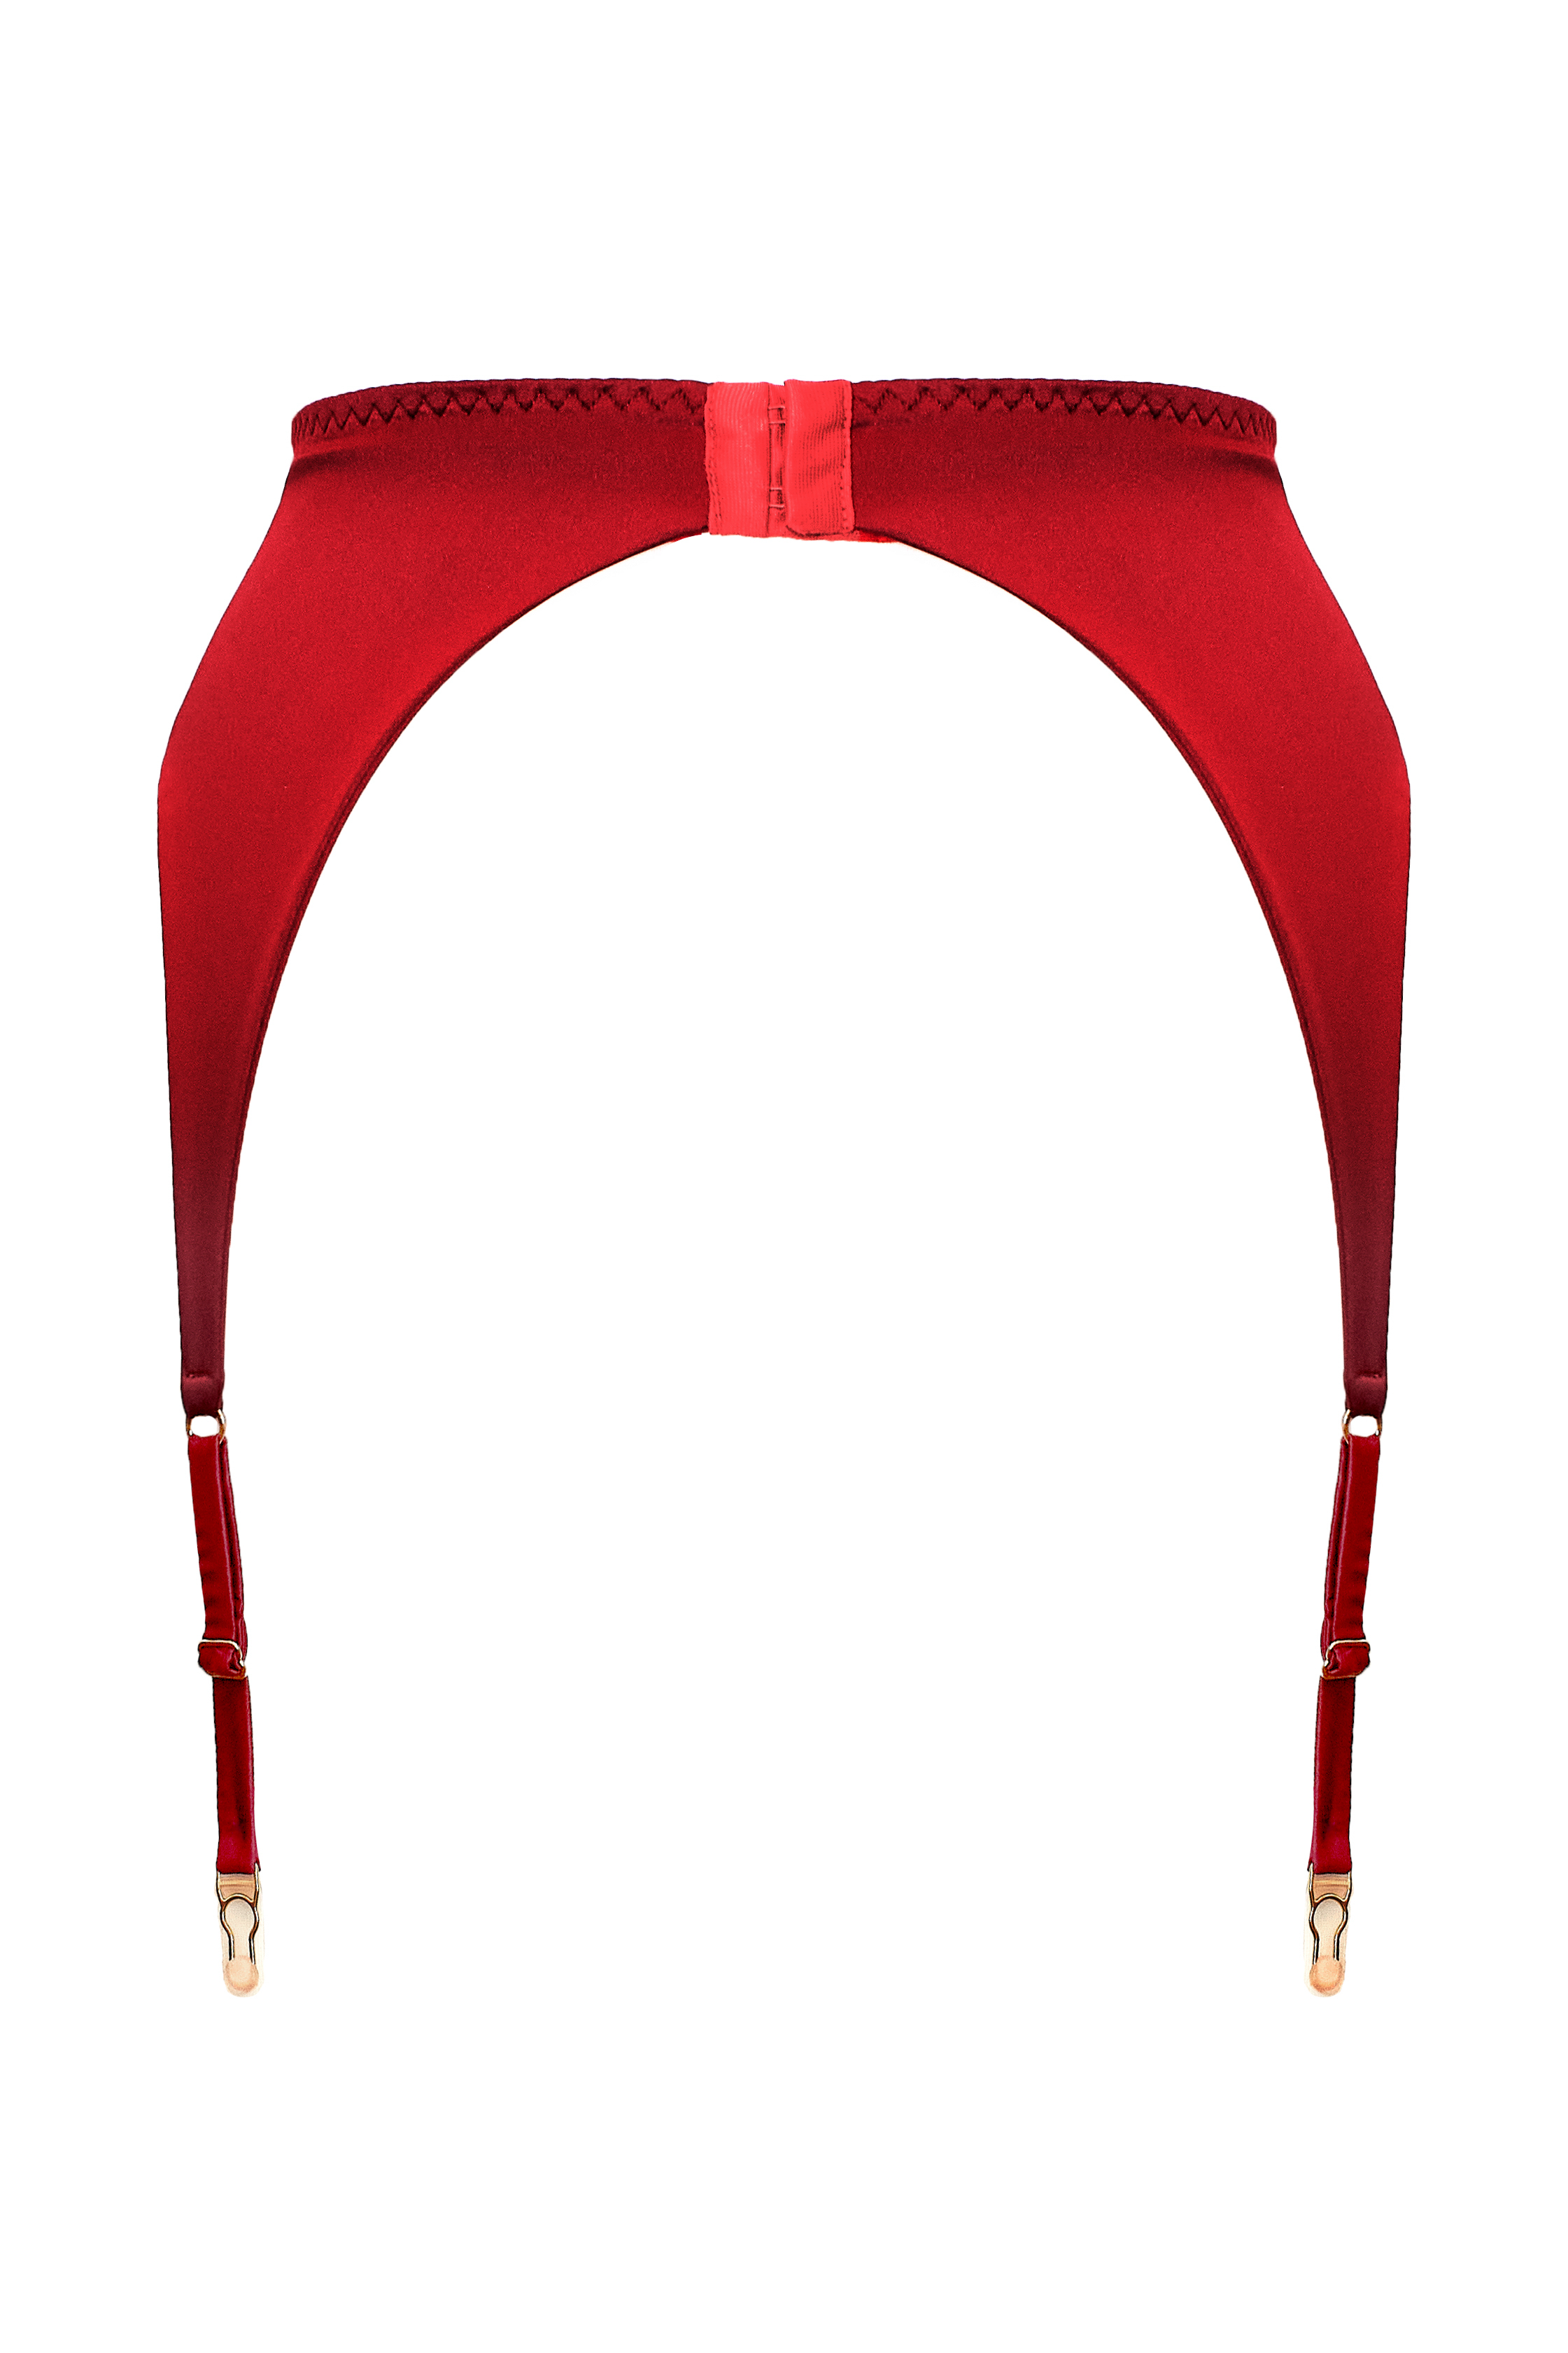 Cymothoe Maroon garter belt